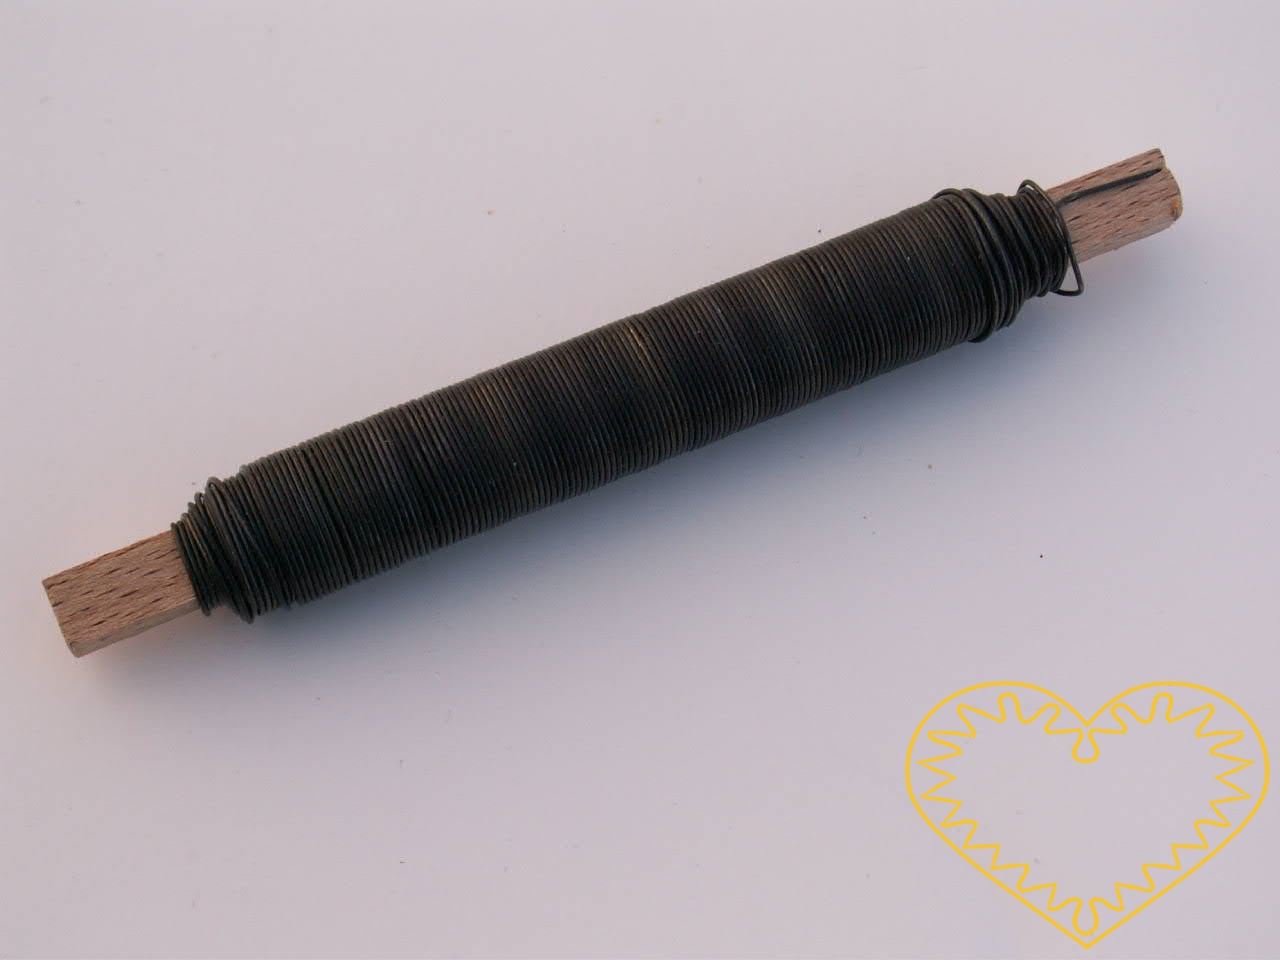 Vázací drát černý žíhaný ø 0,7 mm - 100 g. Drát je vhodný zejména k drátování keramiky apod.